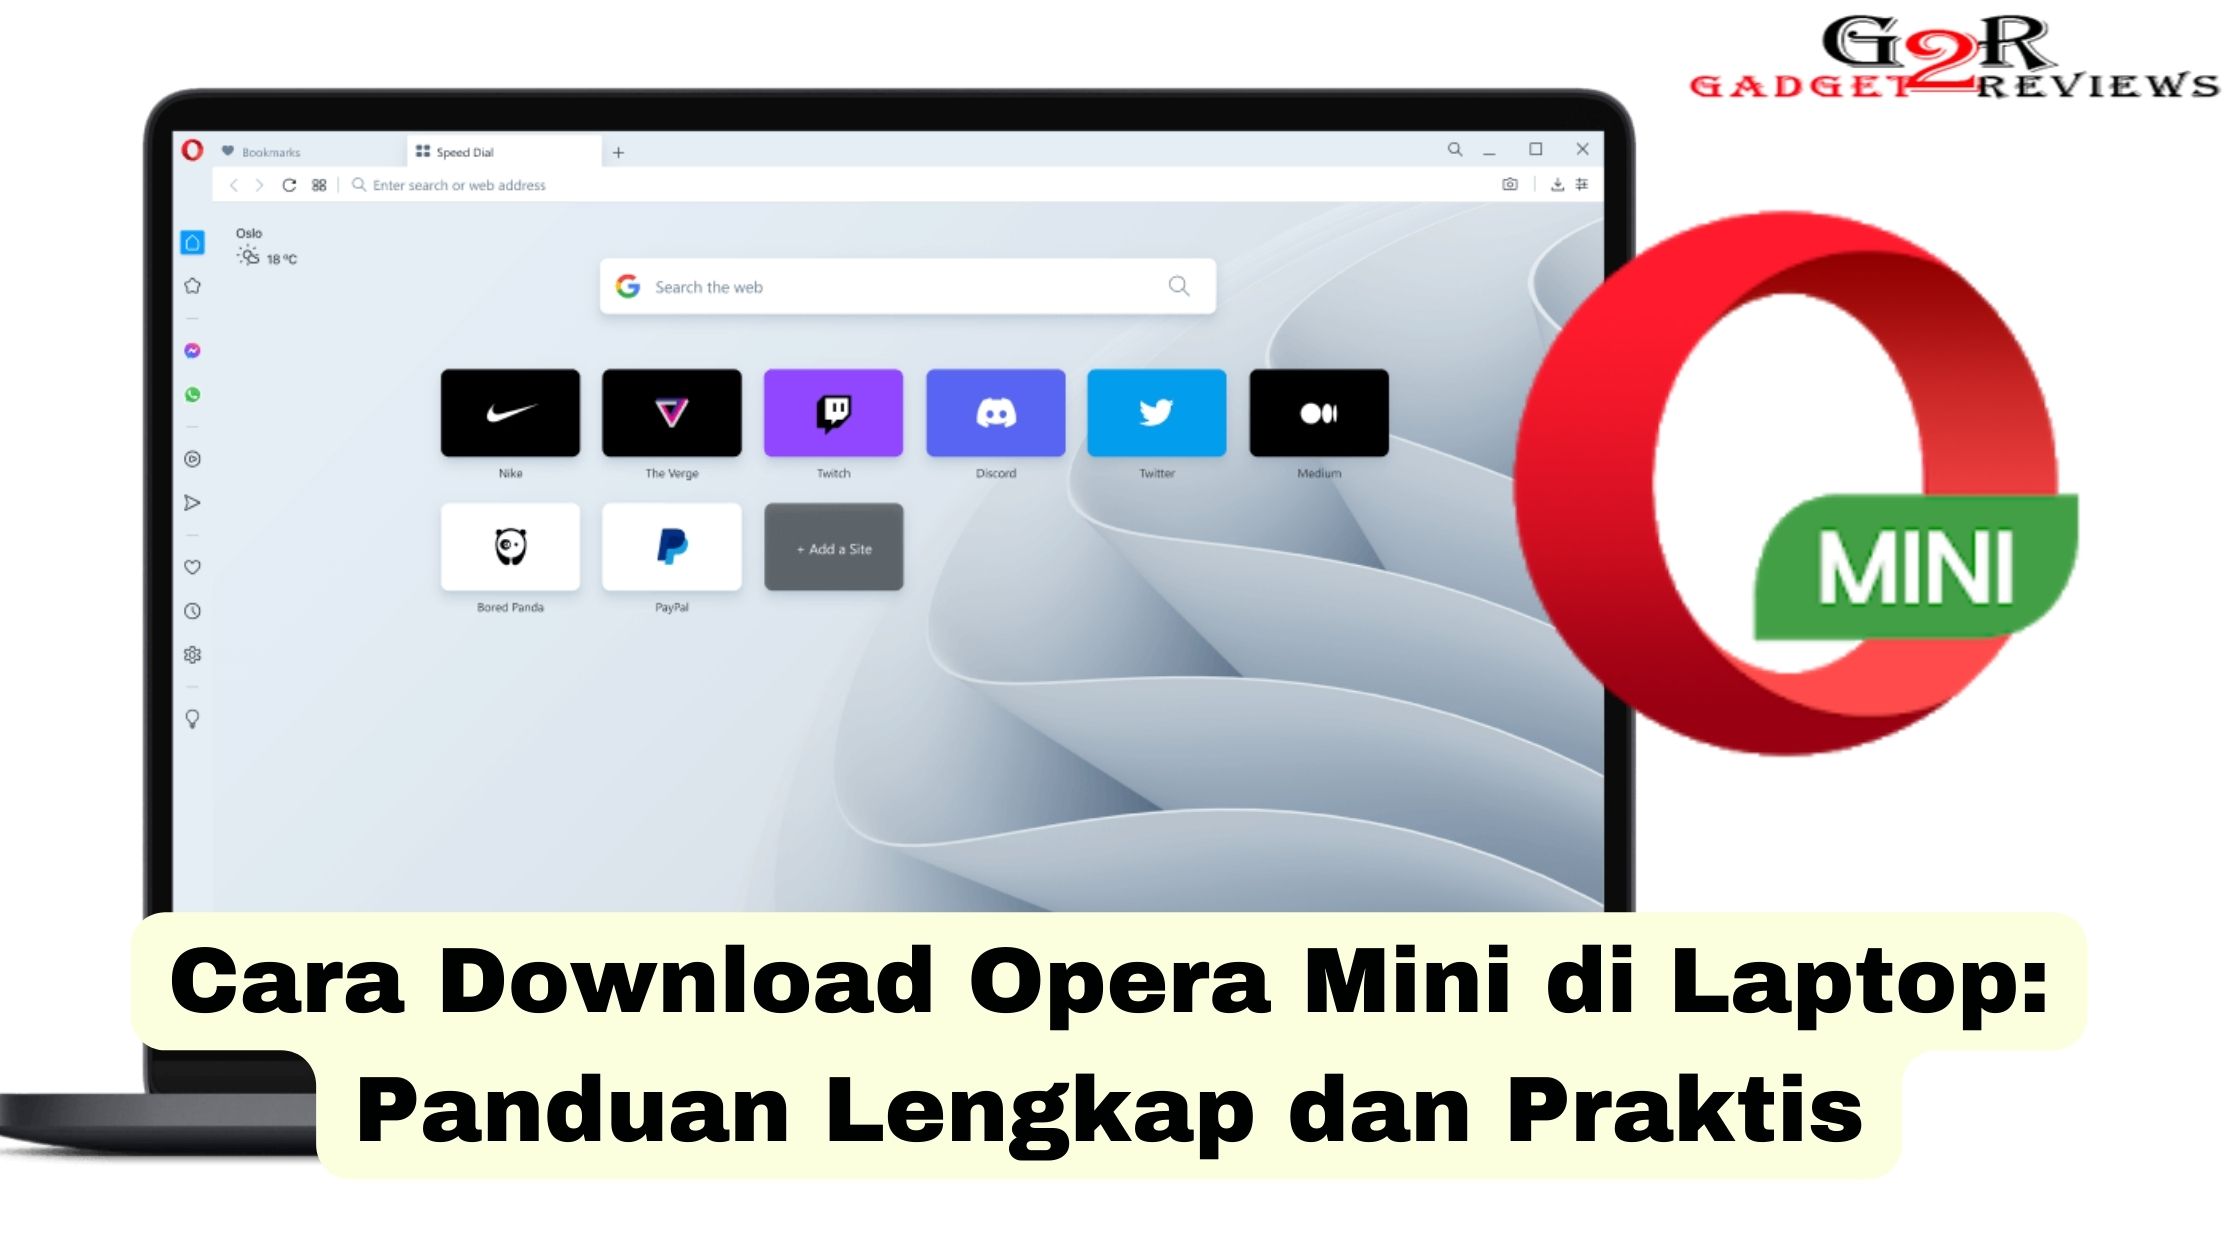 Cara Download Opera Mini di Laptop